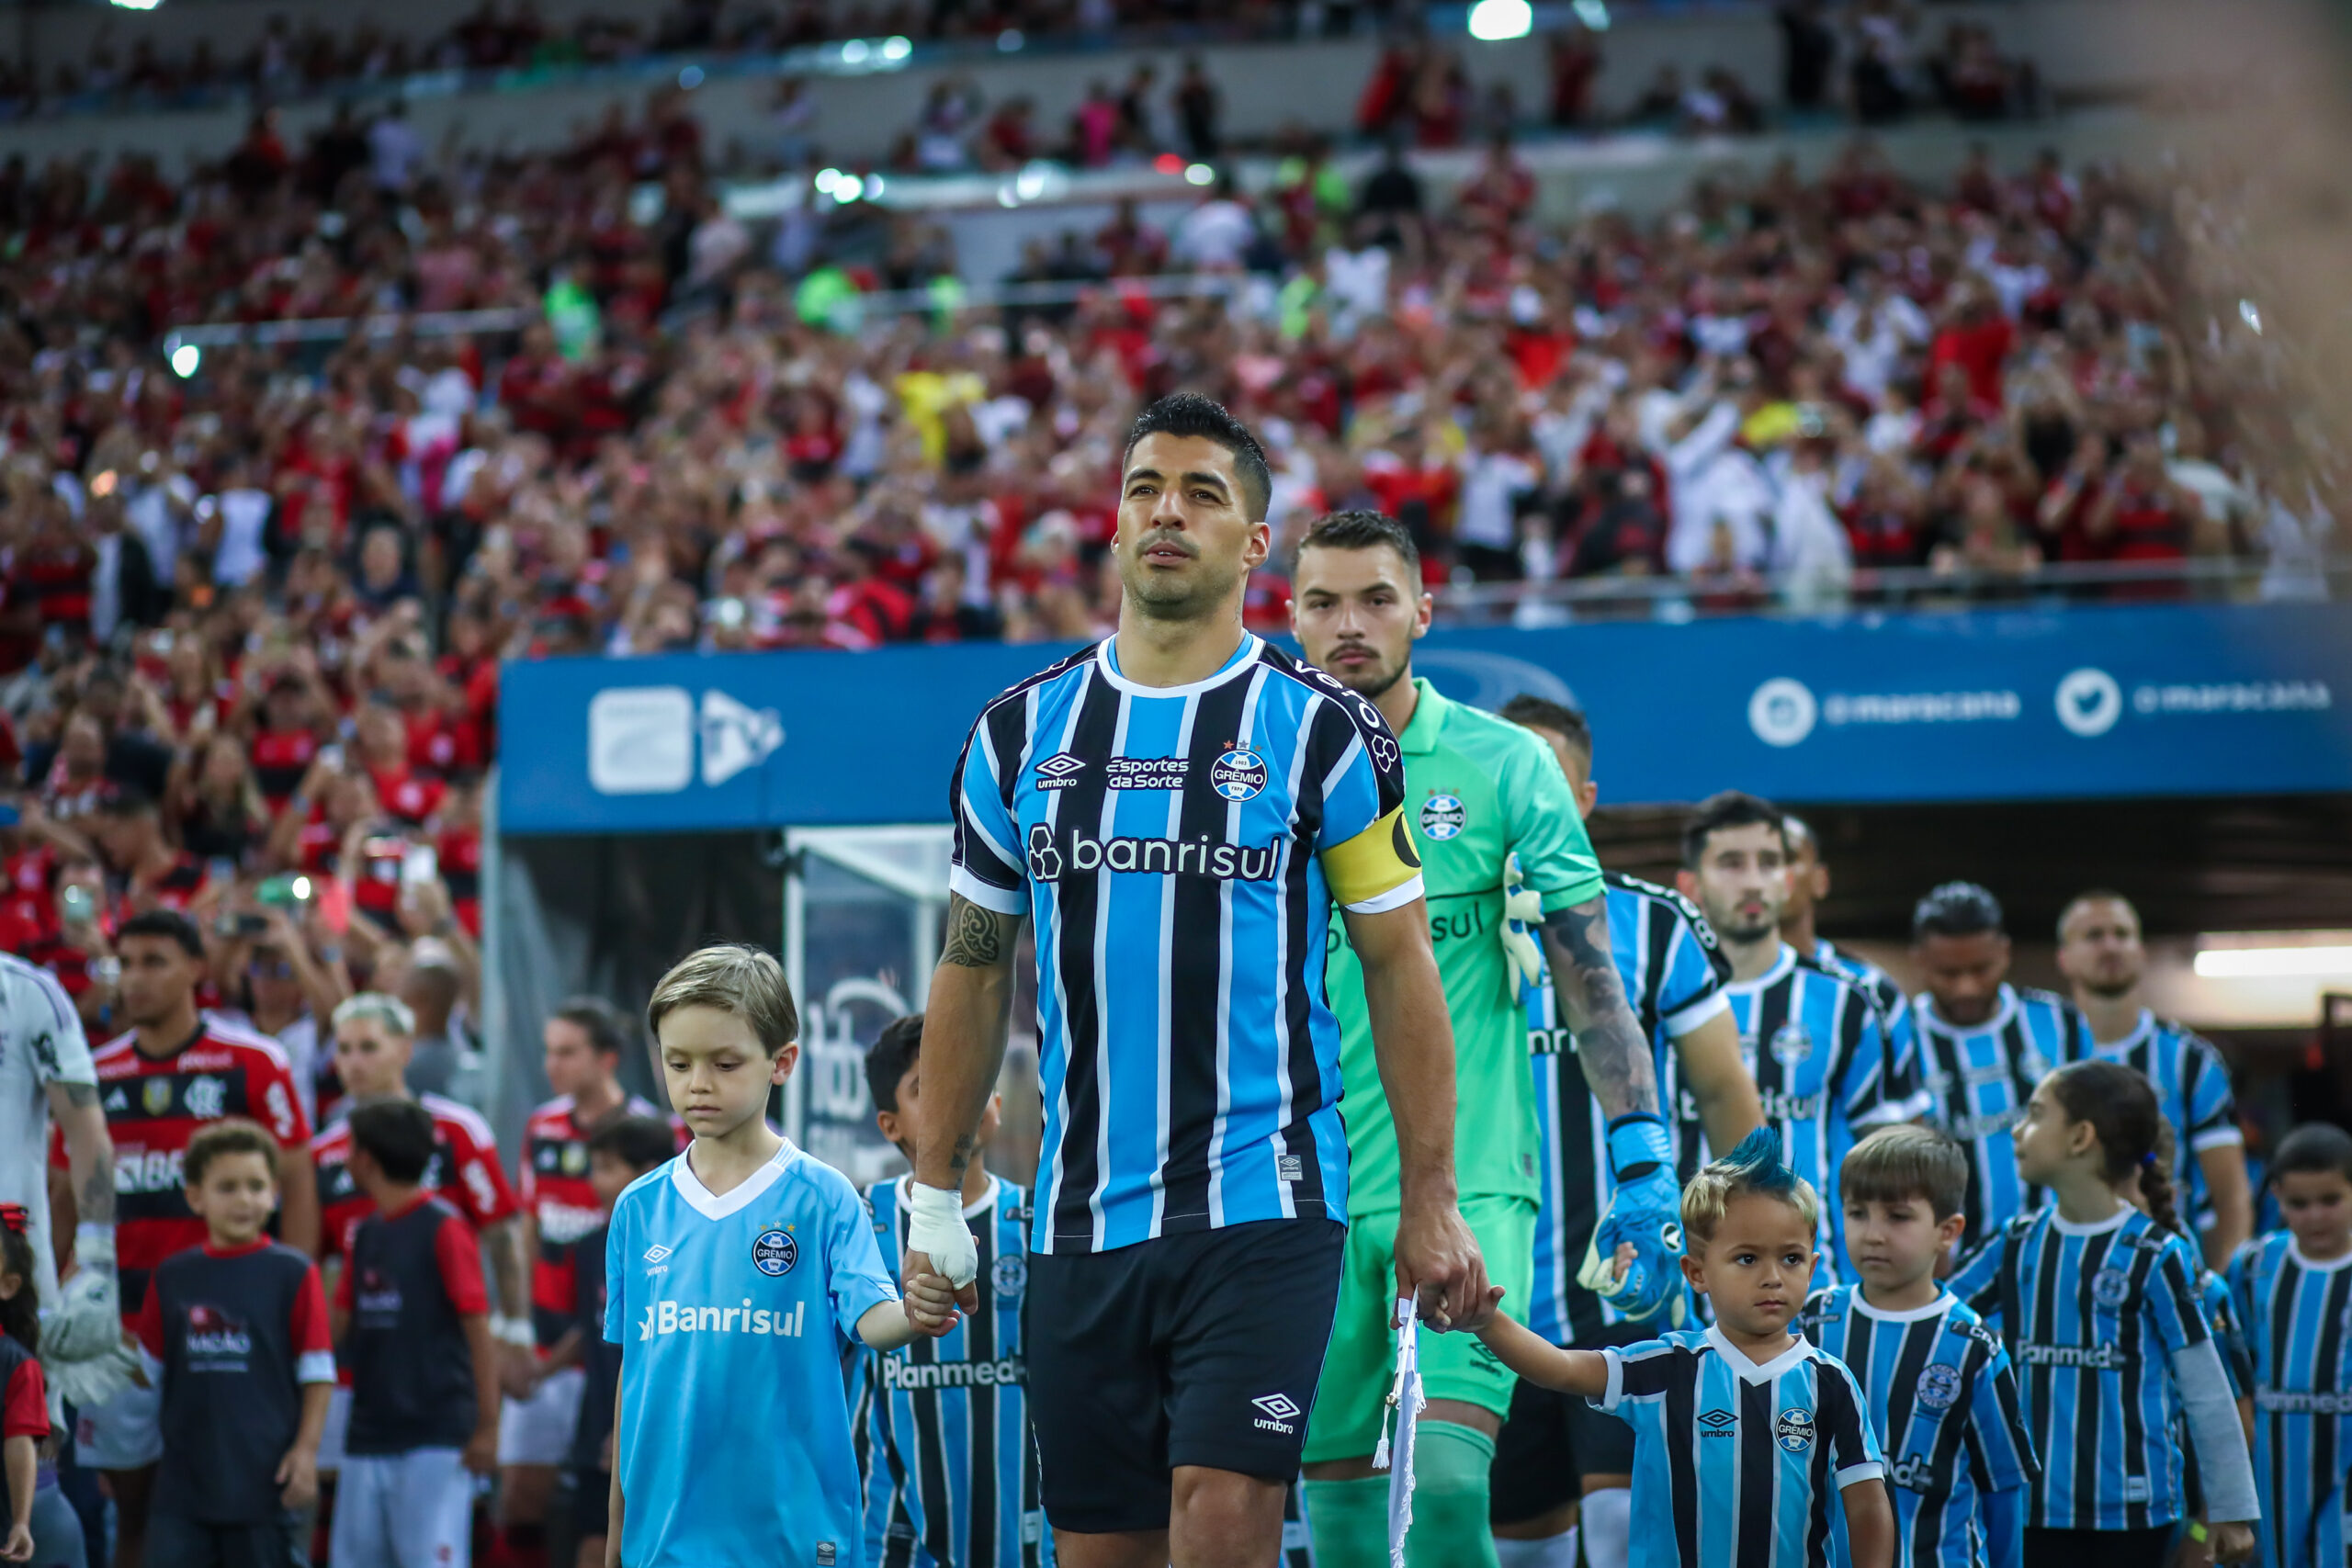 Grêmio FBPA 